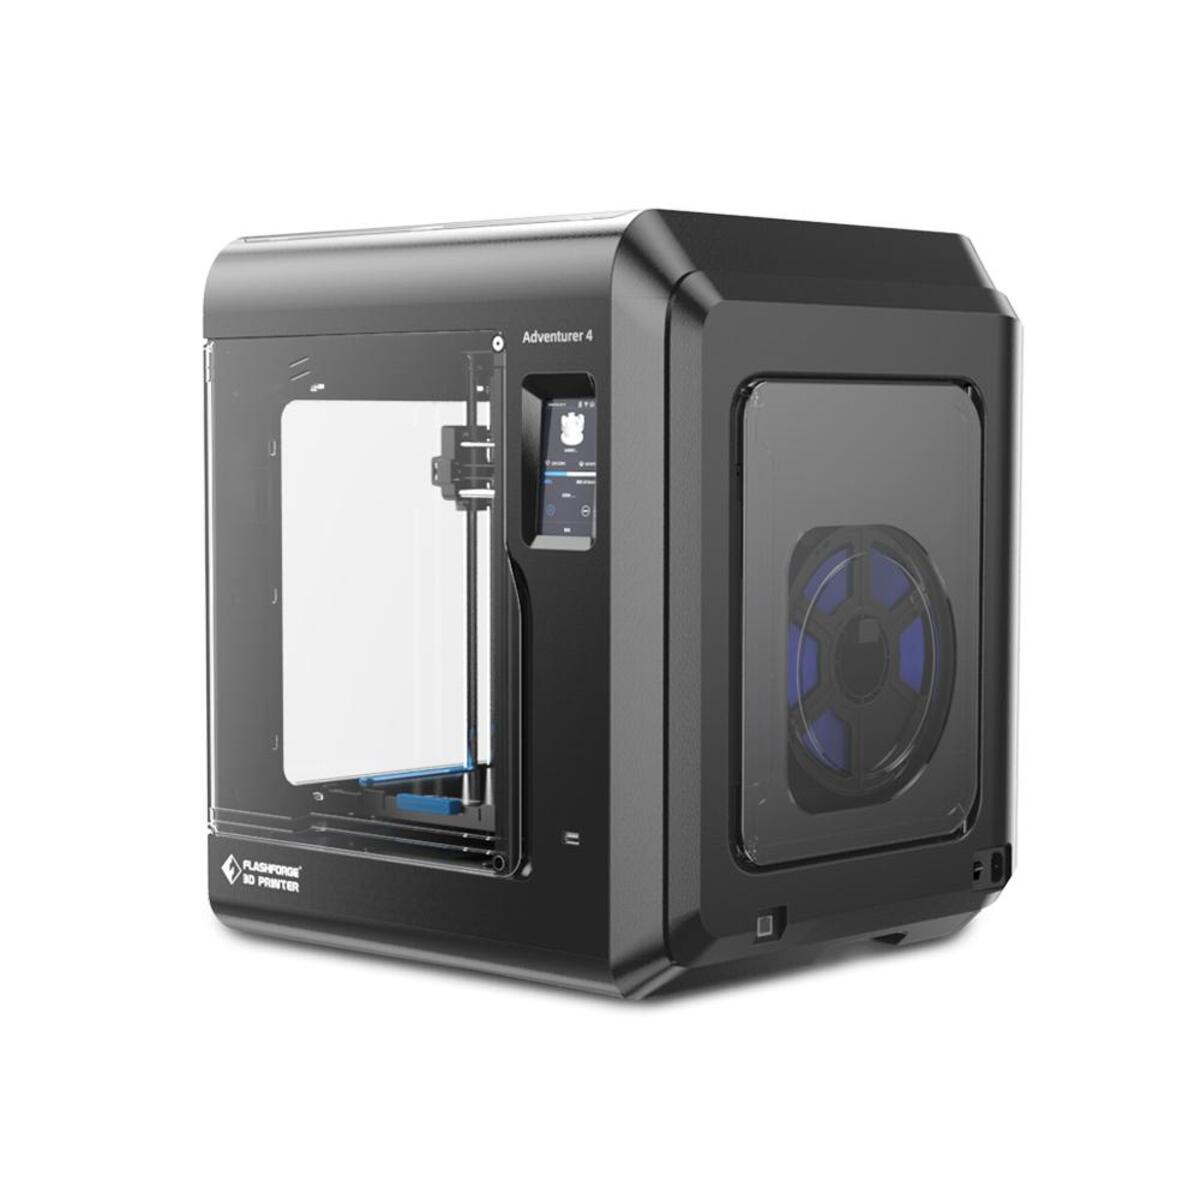 FLASCHFORGE Adventurer 4 Drucker 3D 3D printer FDM